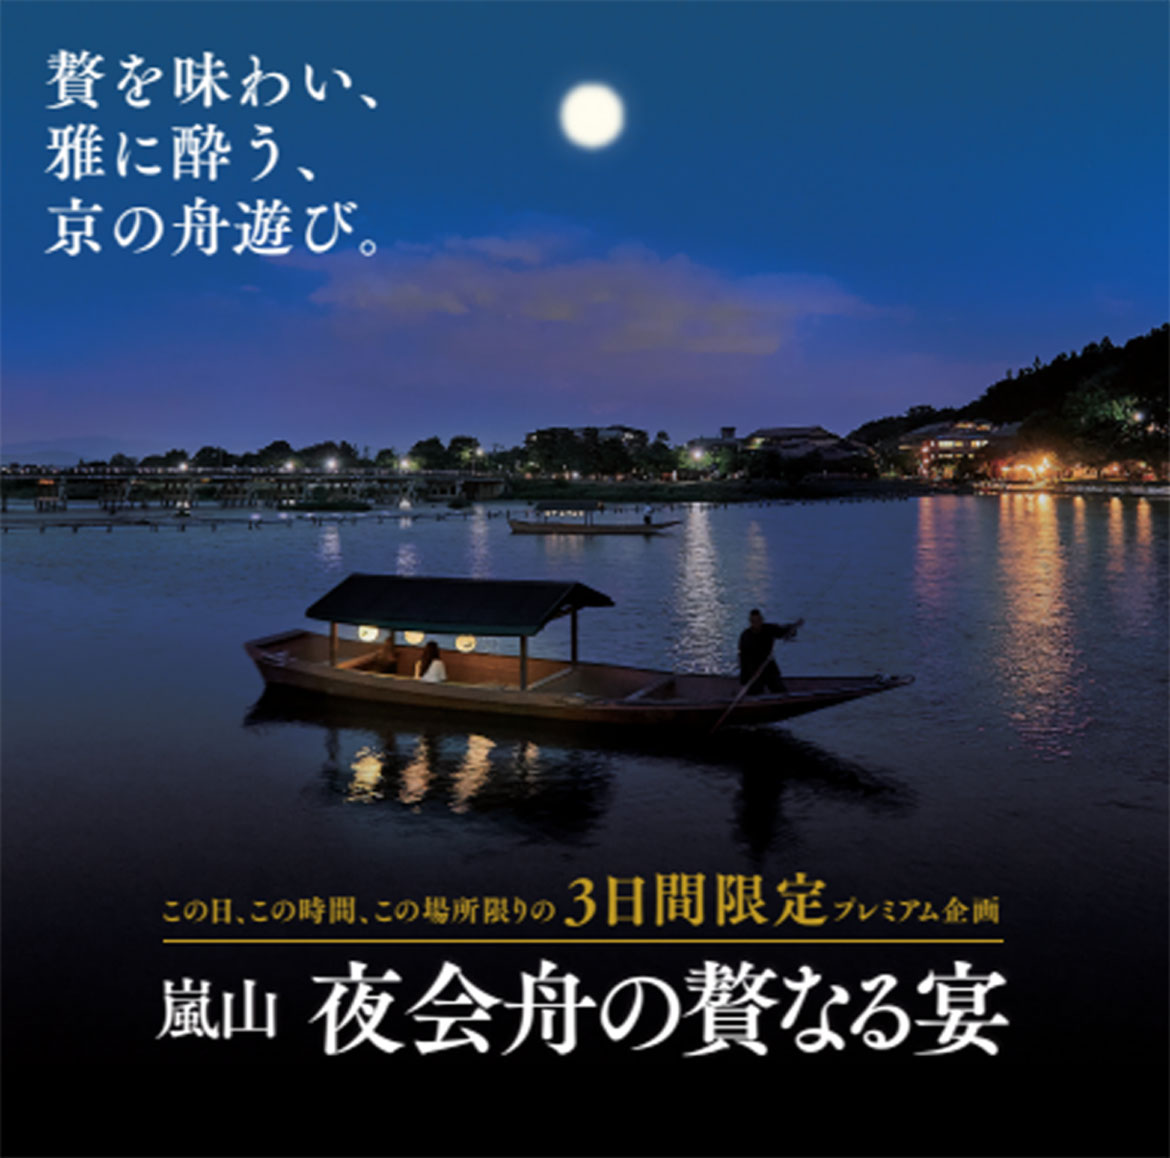 京都嵐山で限定プレミアム企画「夜会舟の贅なる宴」。9/29より3日間だけ開催